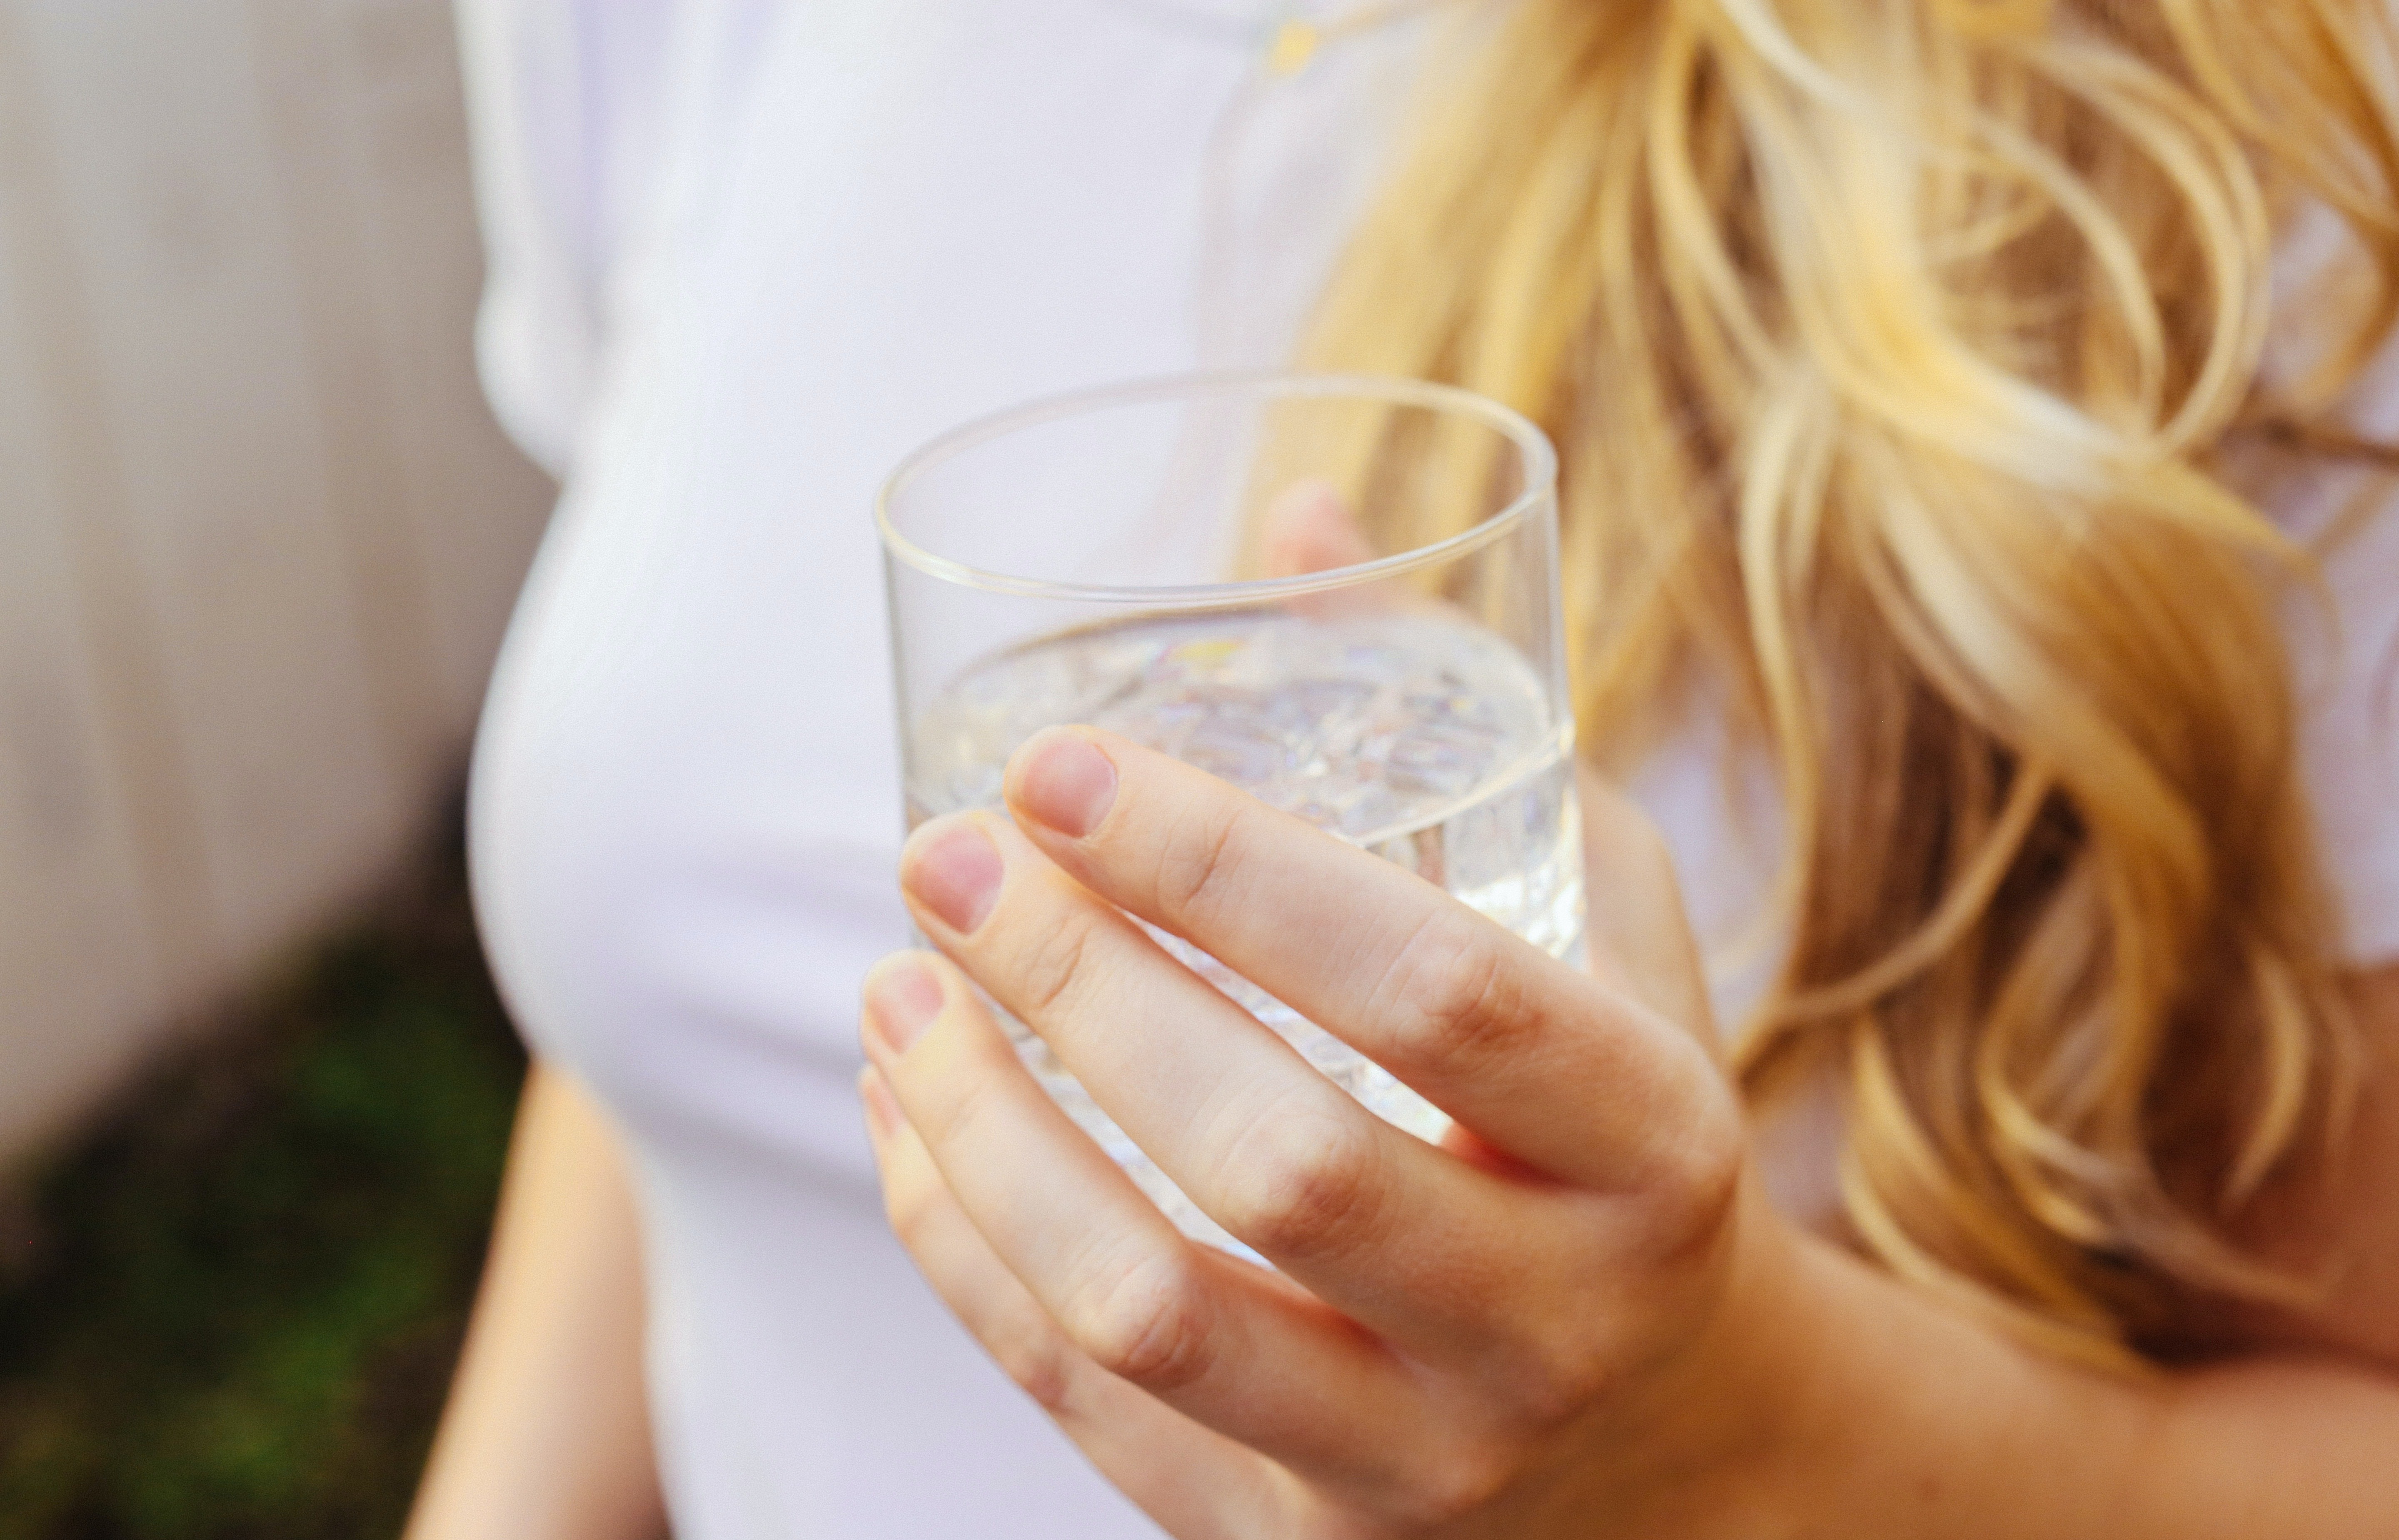 GIORNATA MONDIALE DELL'ACQUA: Consigli per bere acqua ogni giorno